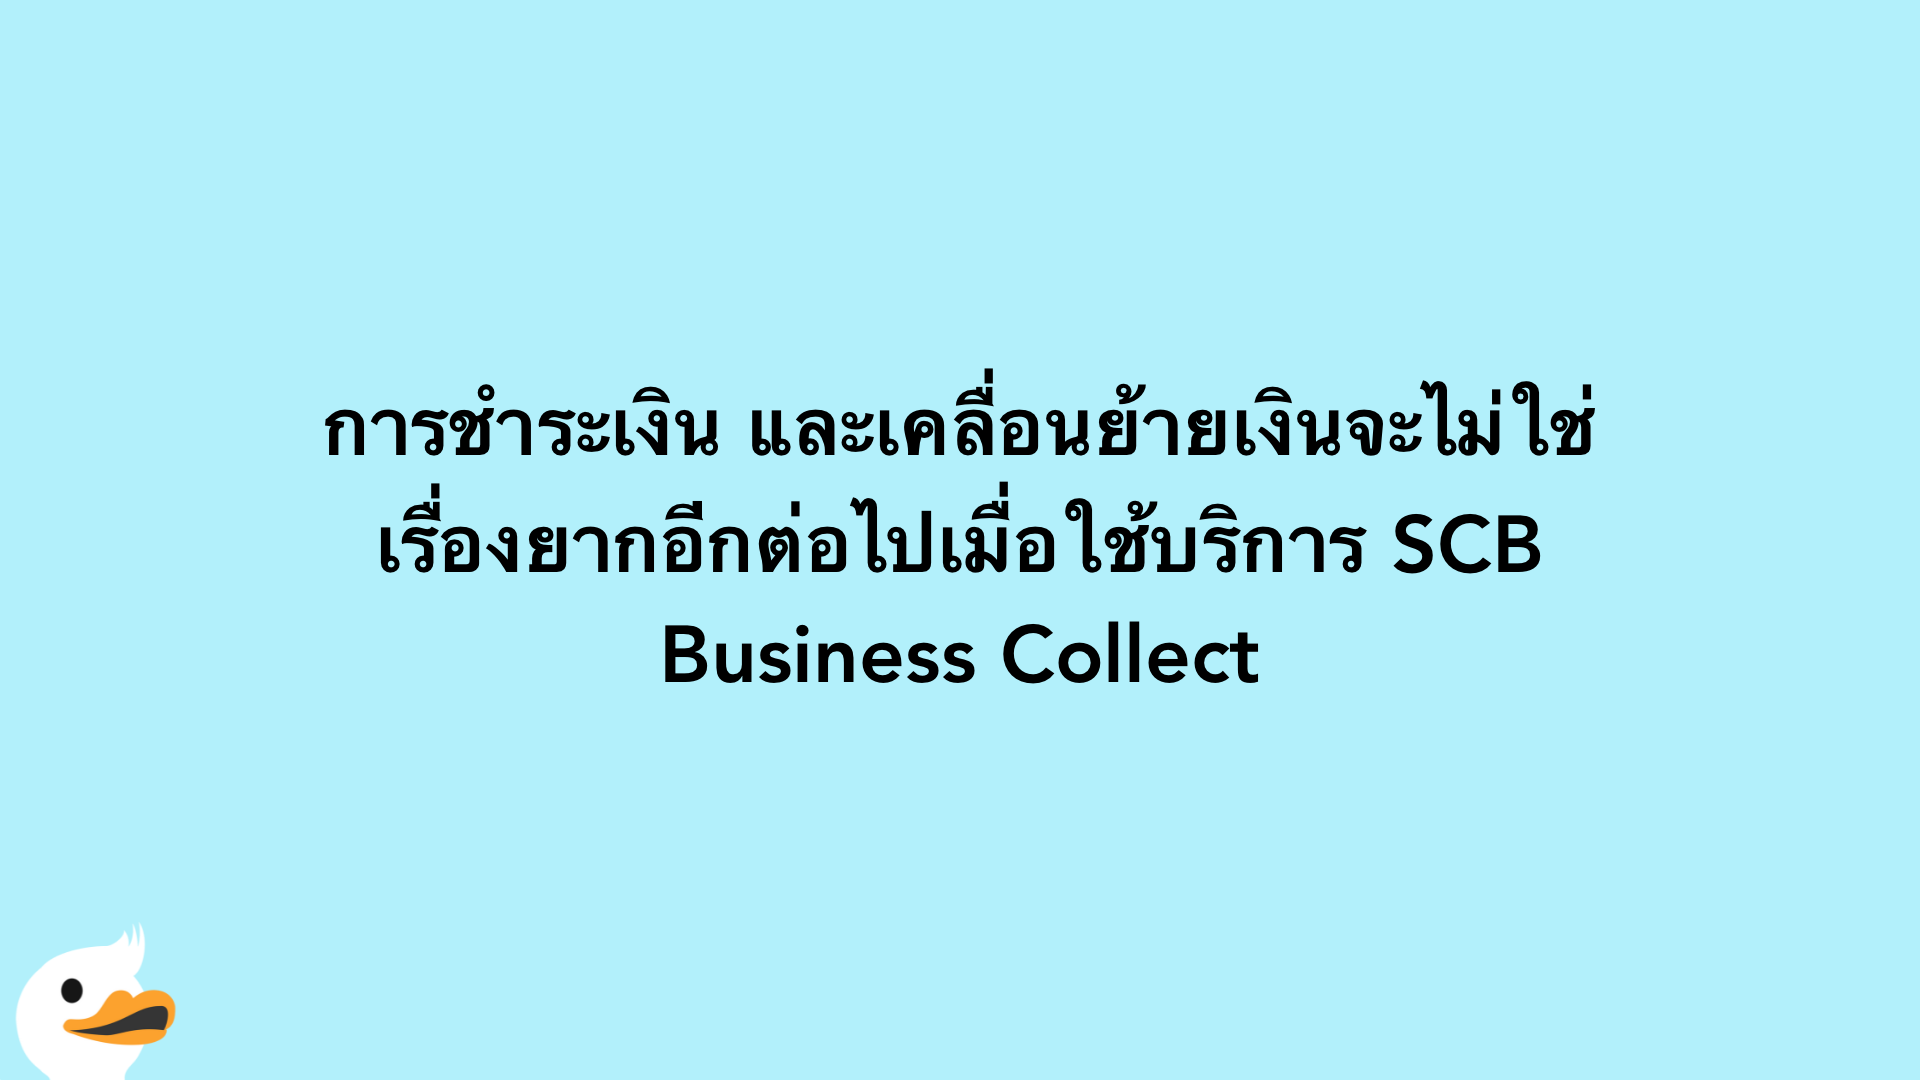 การชำระเงิน และเคลื่อนย้ายเงินจะไม่ใช่เรื่องยากอีกต่อไปเมื่อใช้บริการ SCB Business Collect